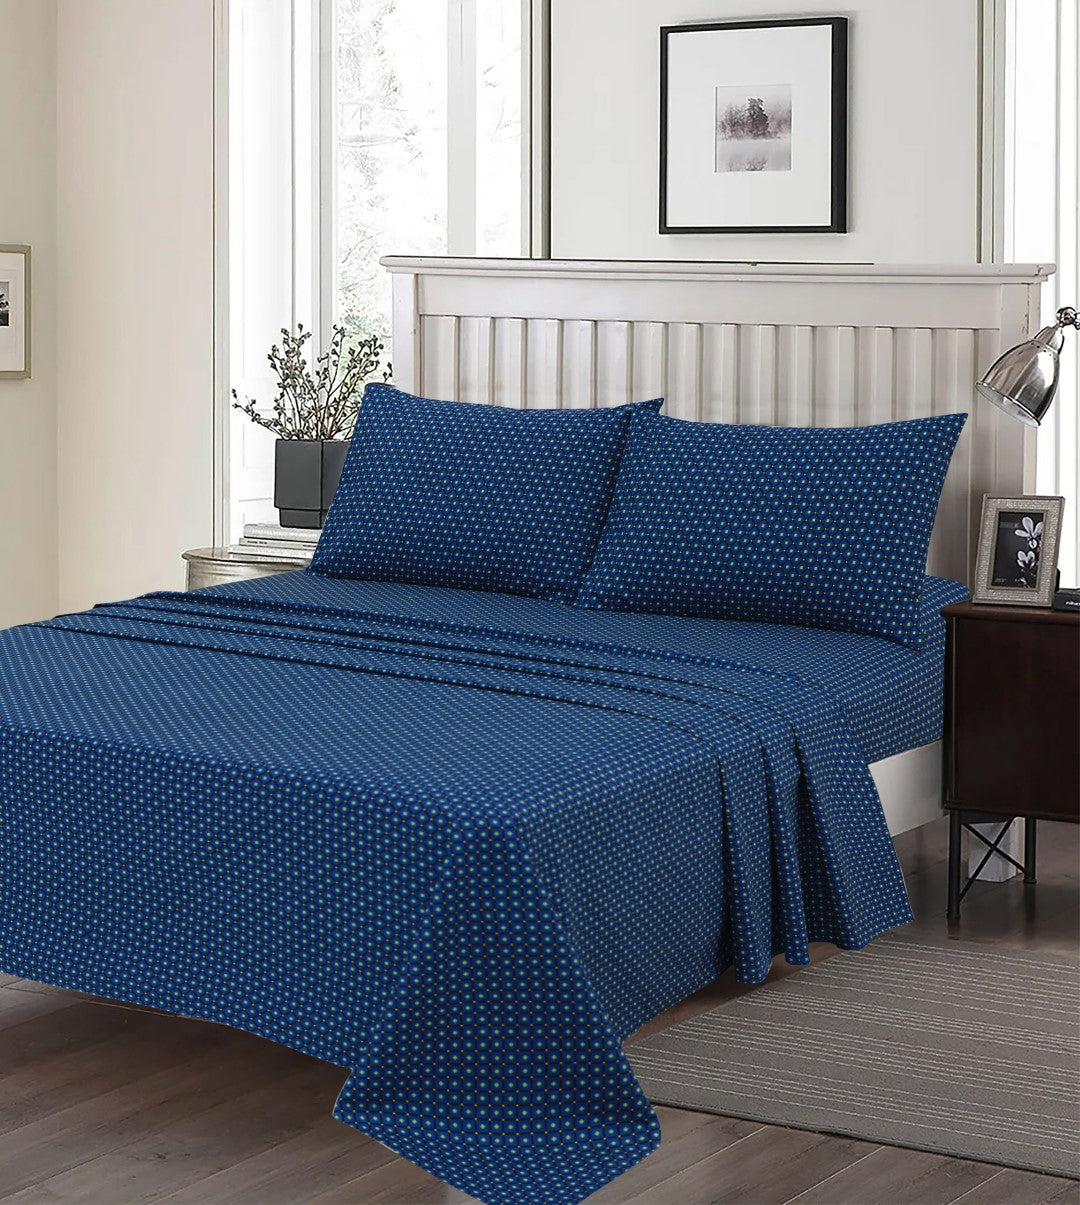 CHARLOTTE BLUE - Bedsheet